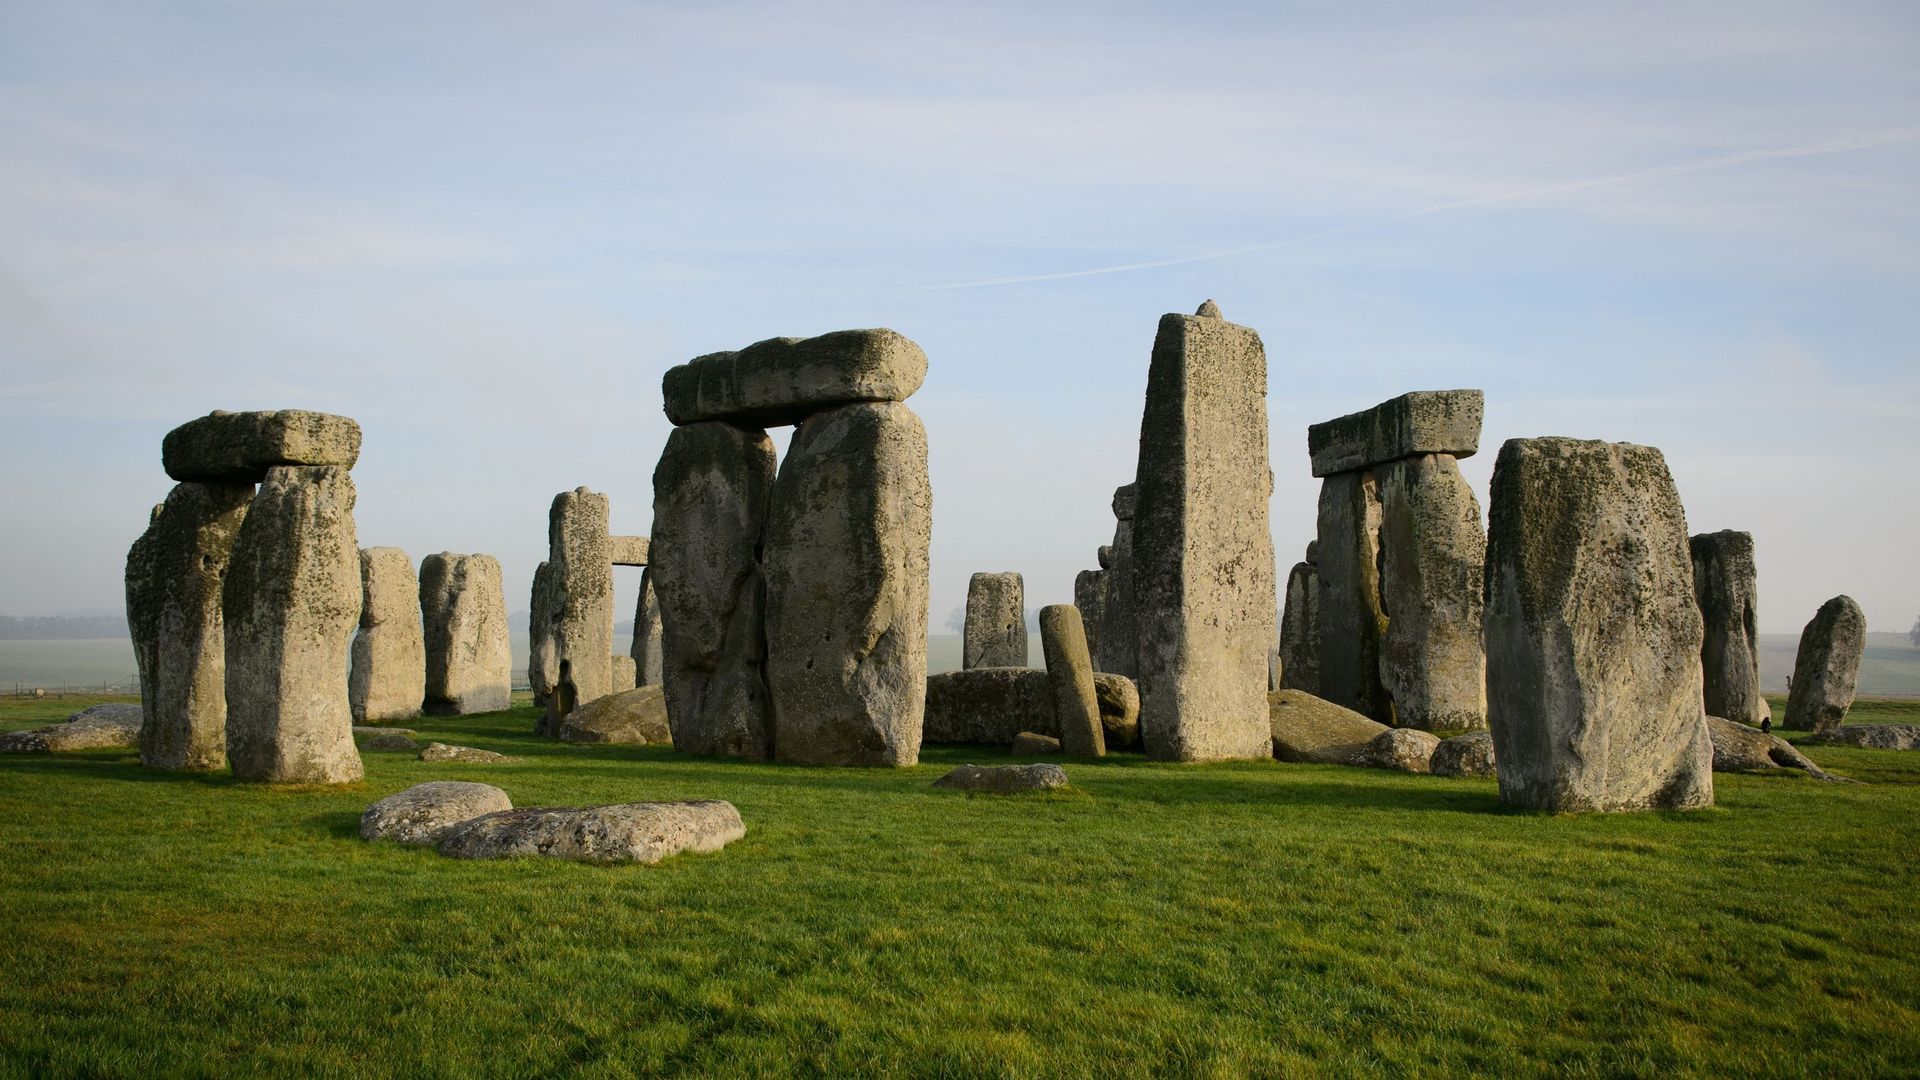 Des tombes préhistoriques vieilles de 4500 ans découvertes à Stonehenge